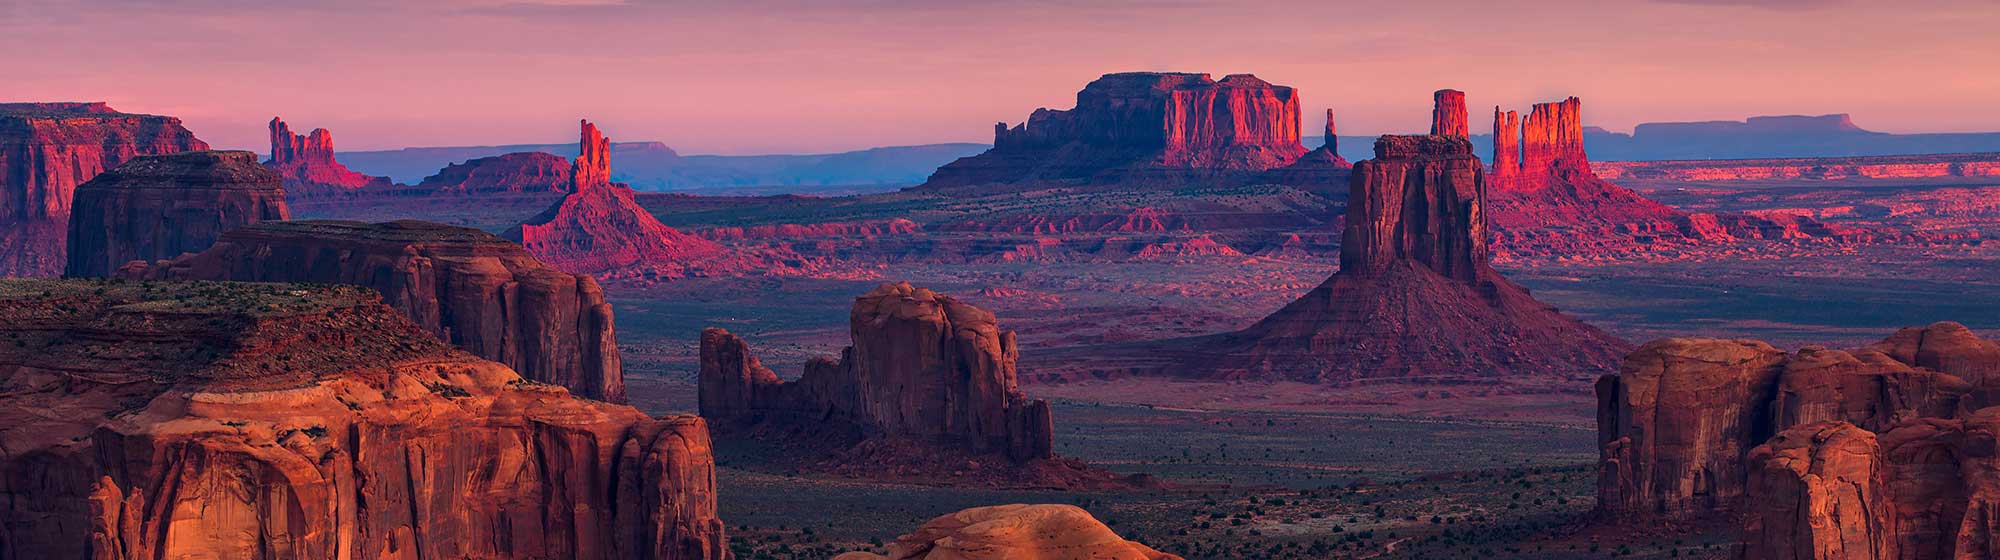 Le coucher de soleil sur le désert de l'Ouest américain